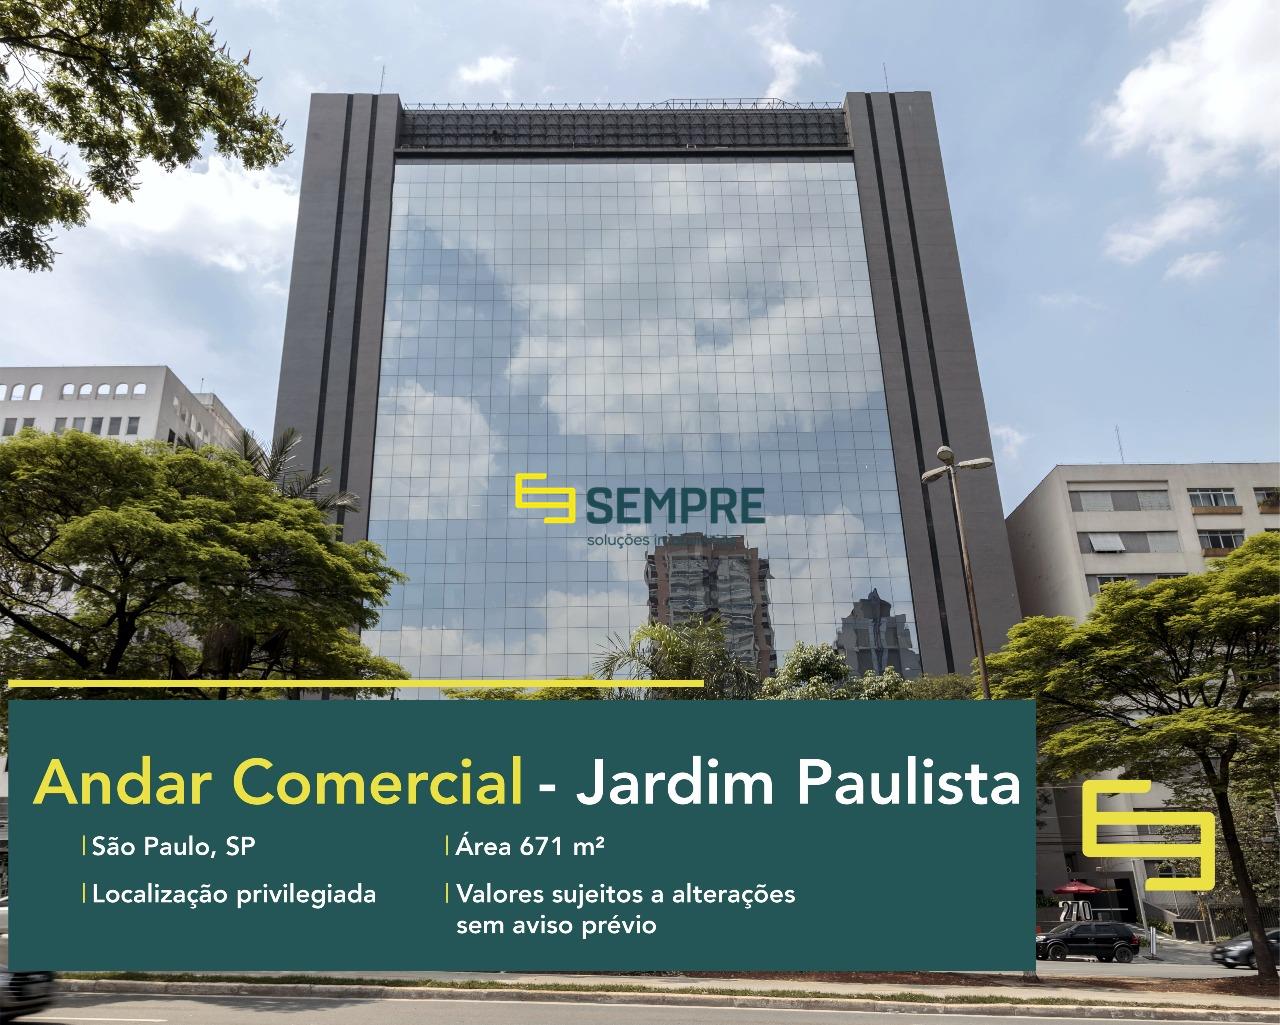 Locação de laje corporativa no Pinheiros Corporate - SP, excelente localização. O estabelecimento comercial conta com área de 671 m².